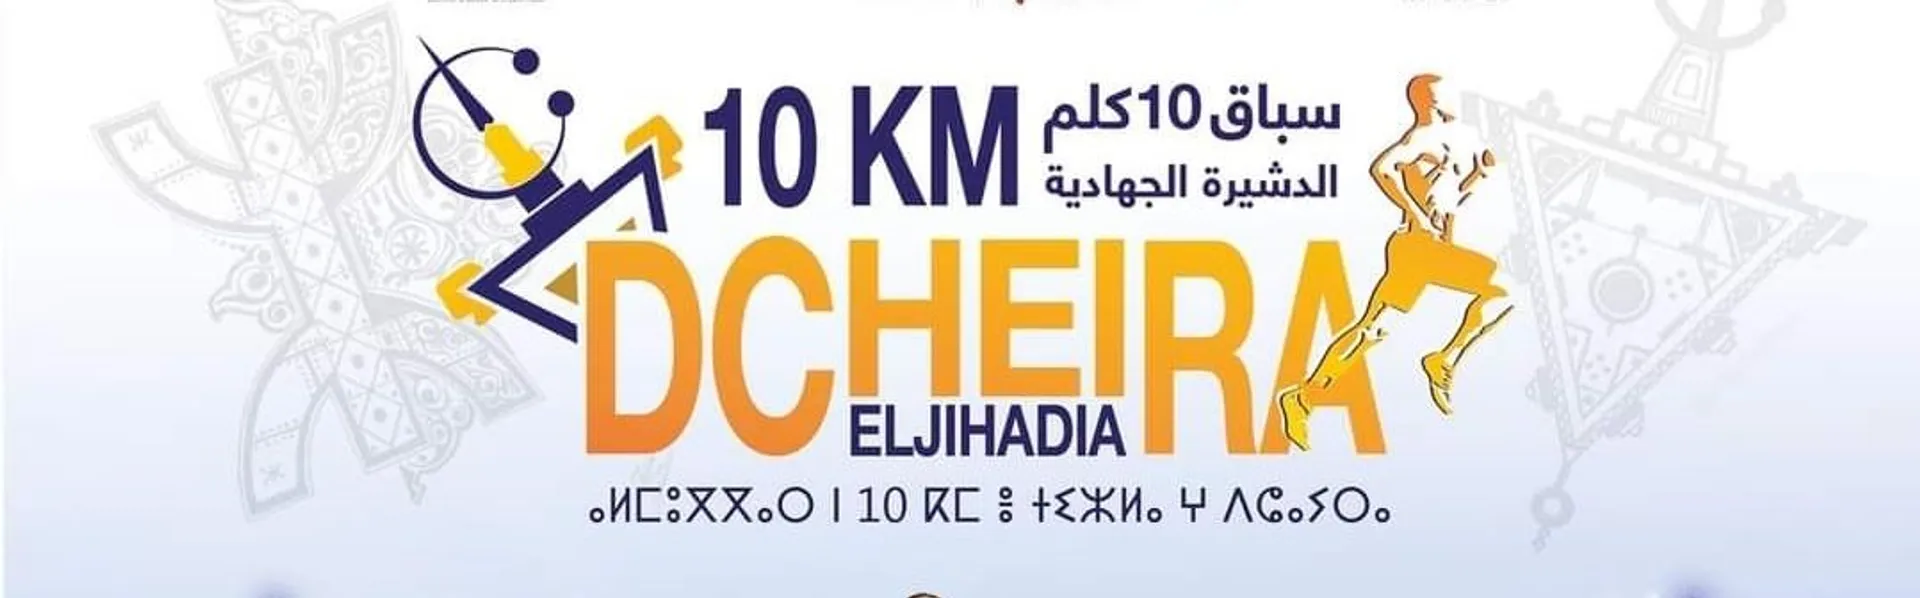 10 km Dcheira